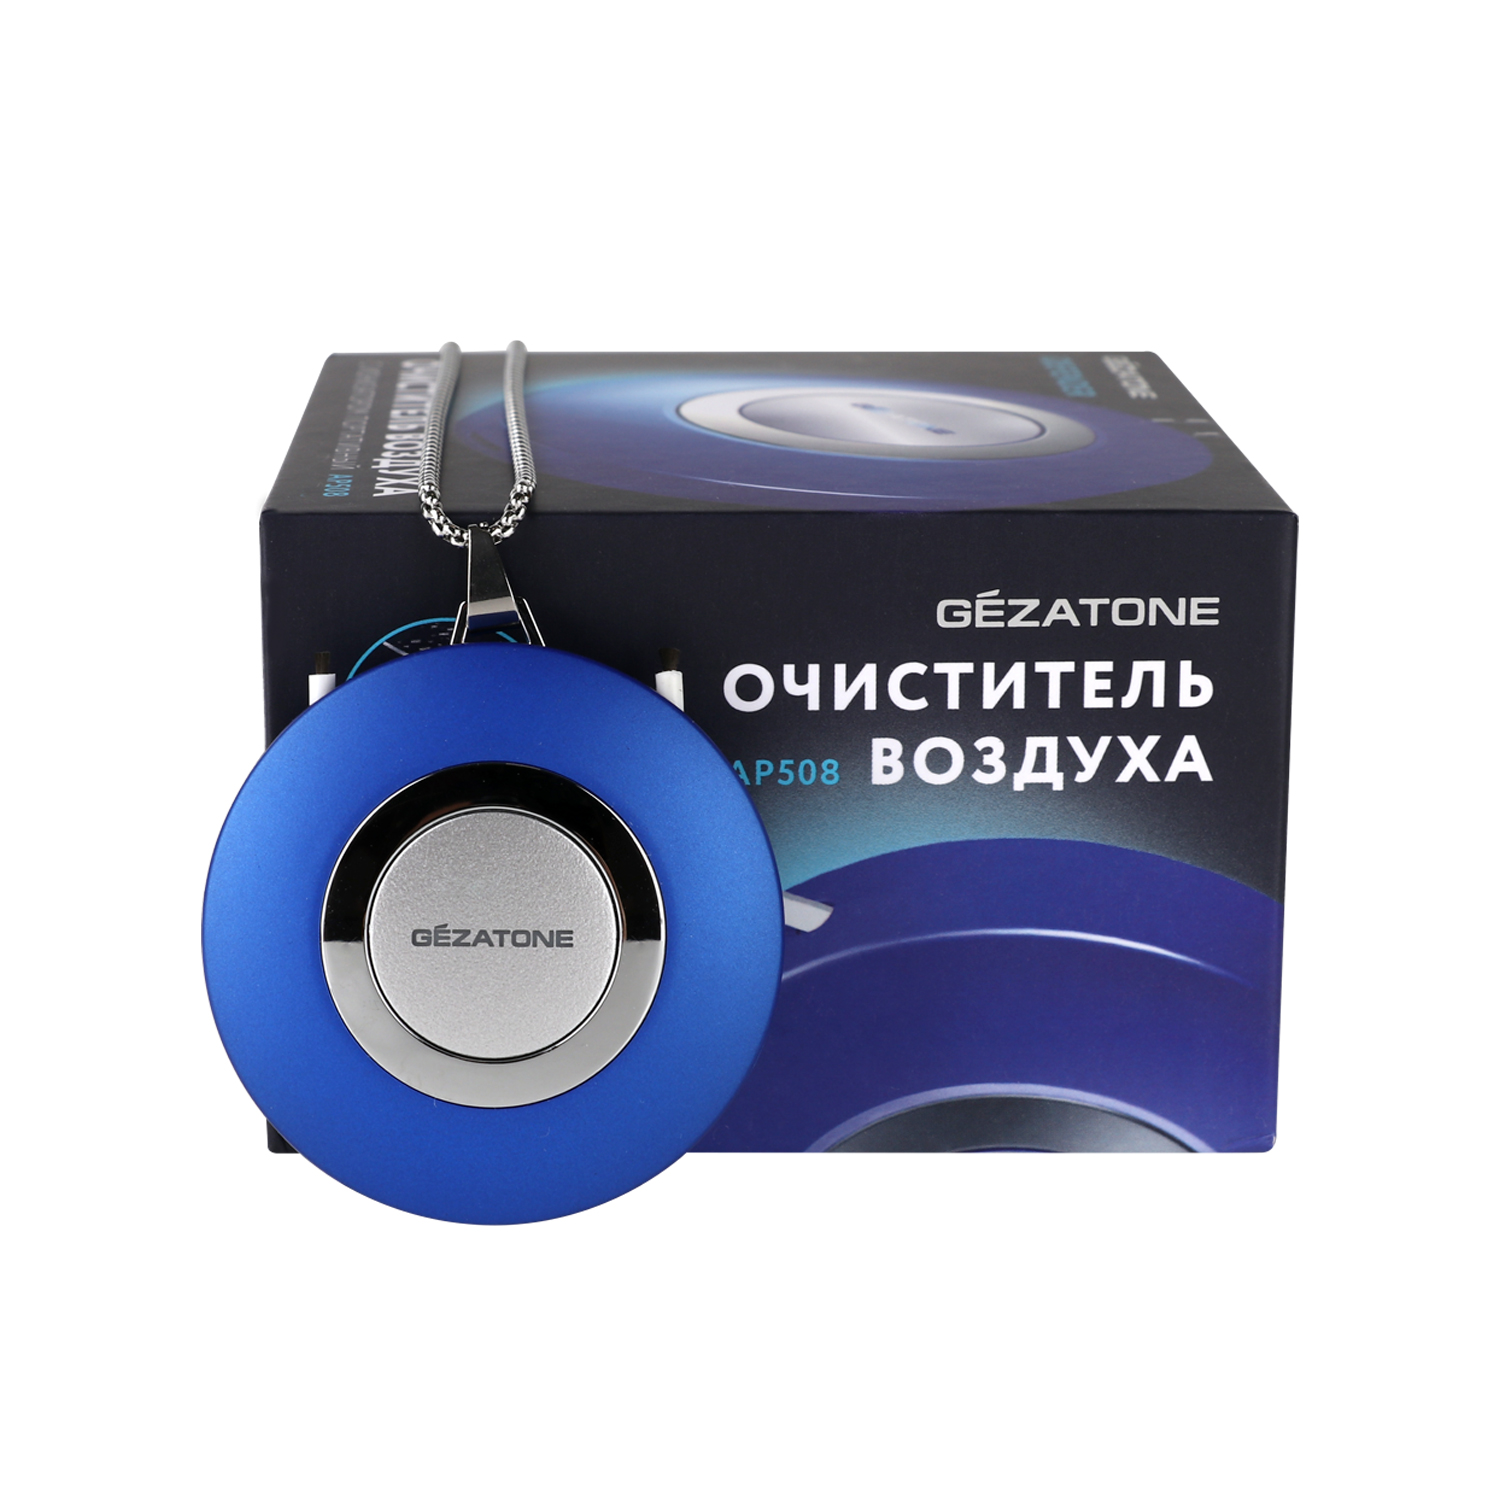 Очиститель воздуха Gezatone Ионизатор портативный AP508 iDefender - фото 3